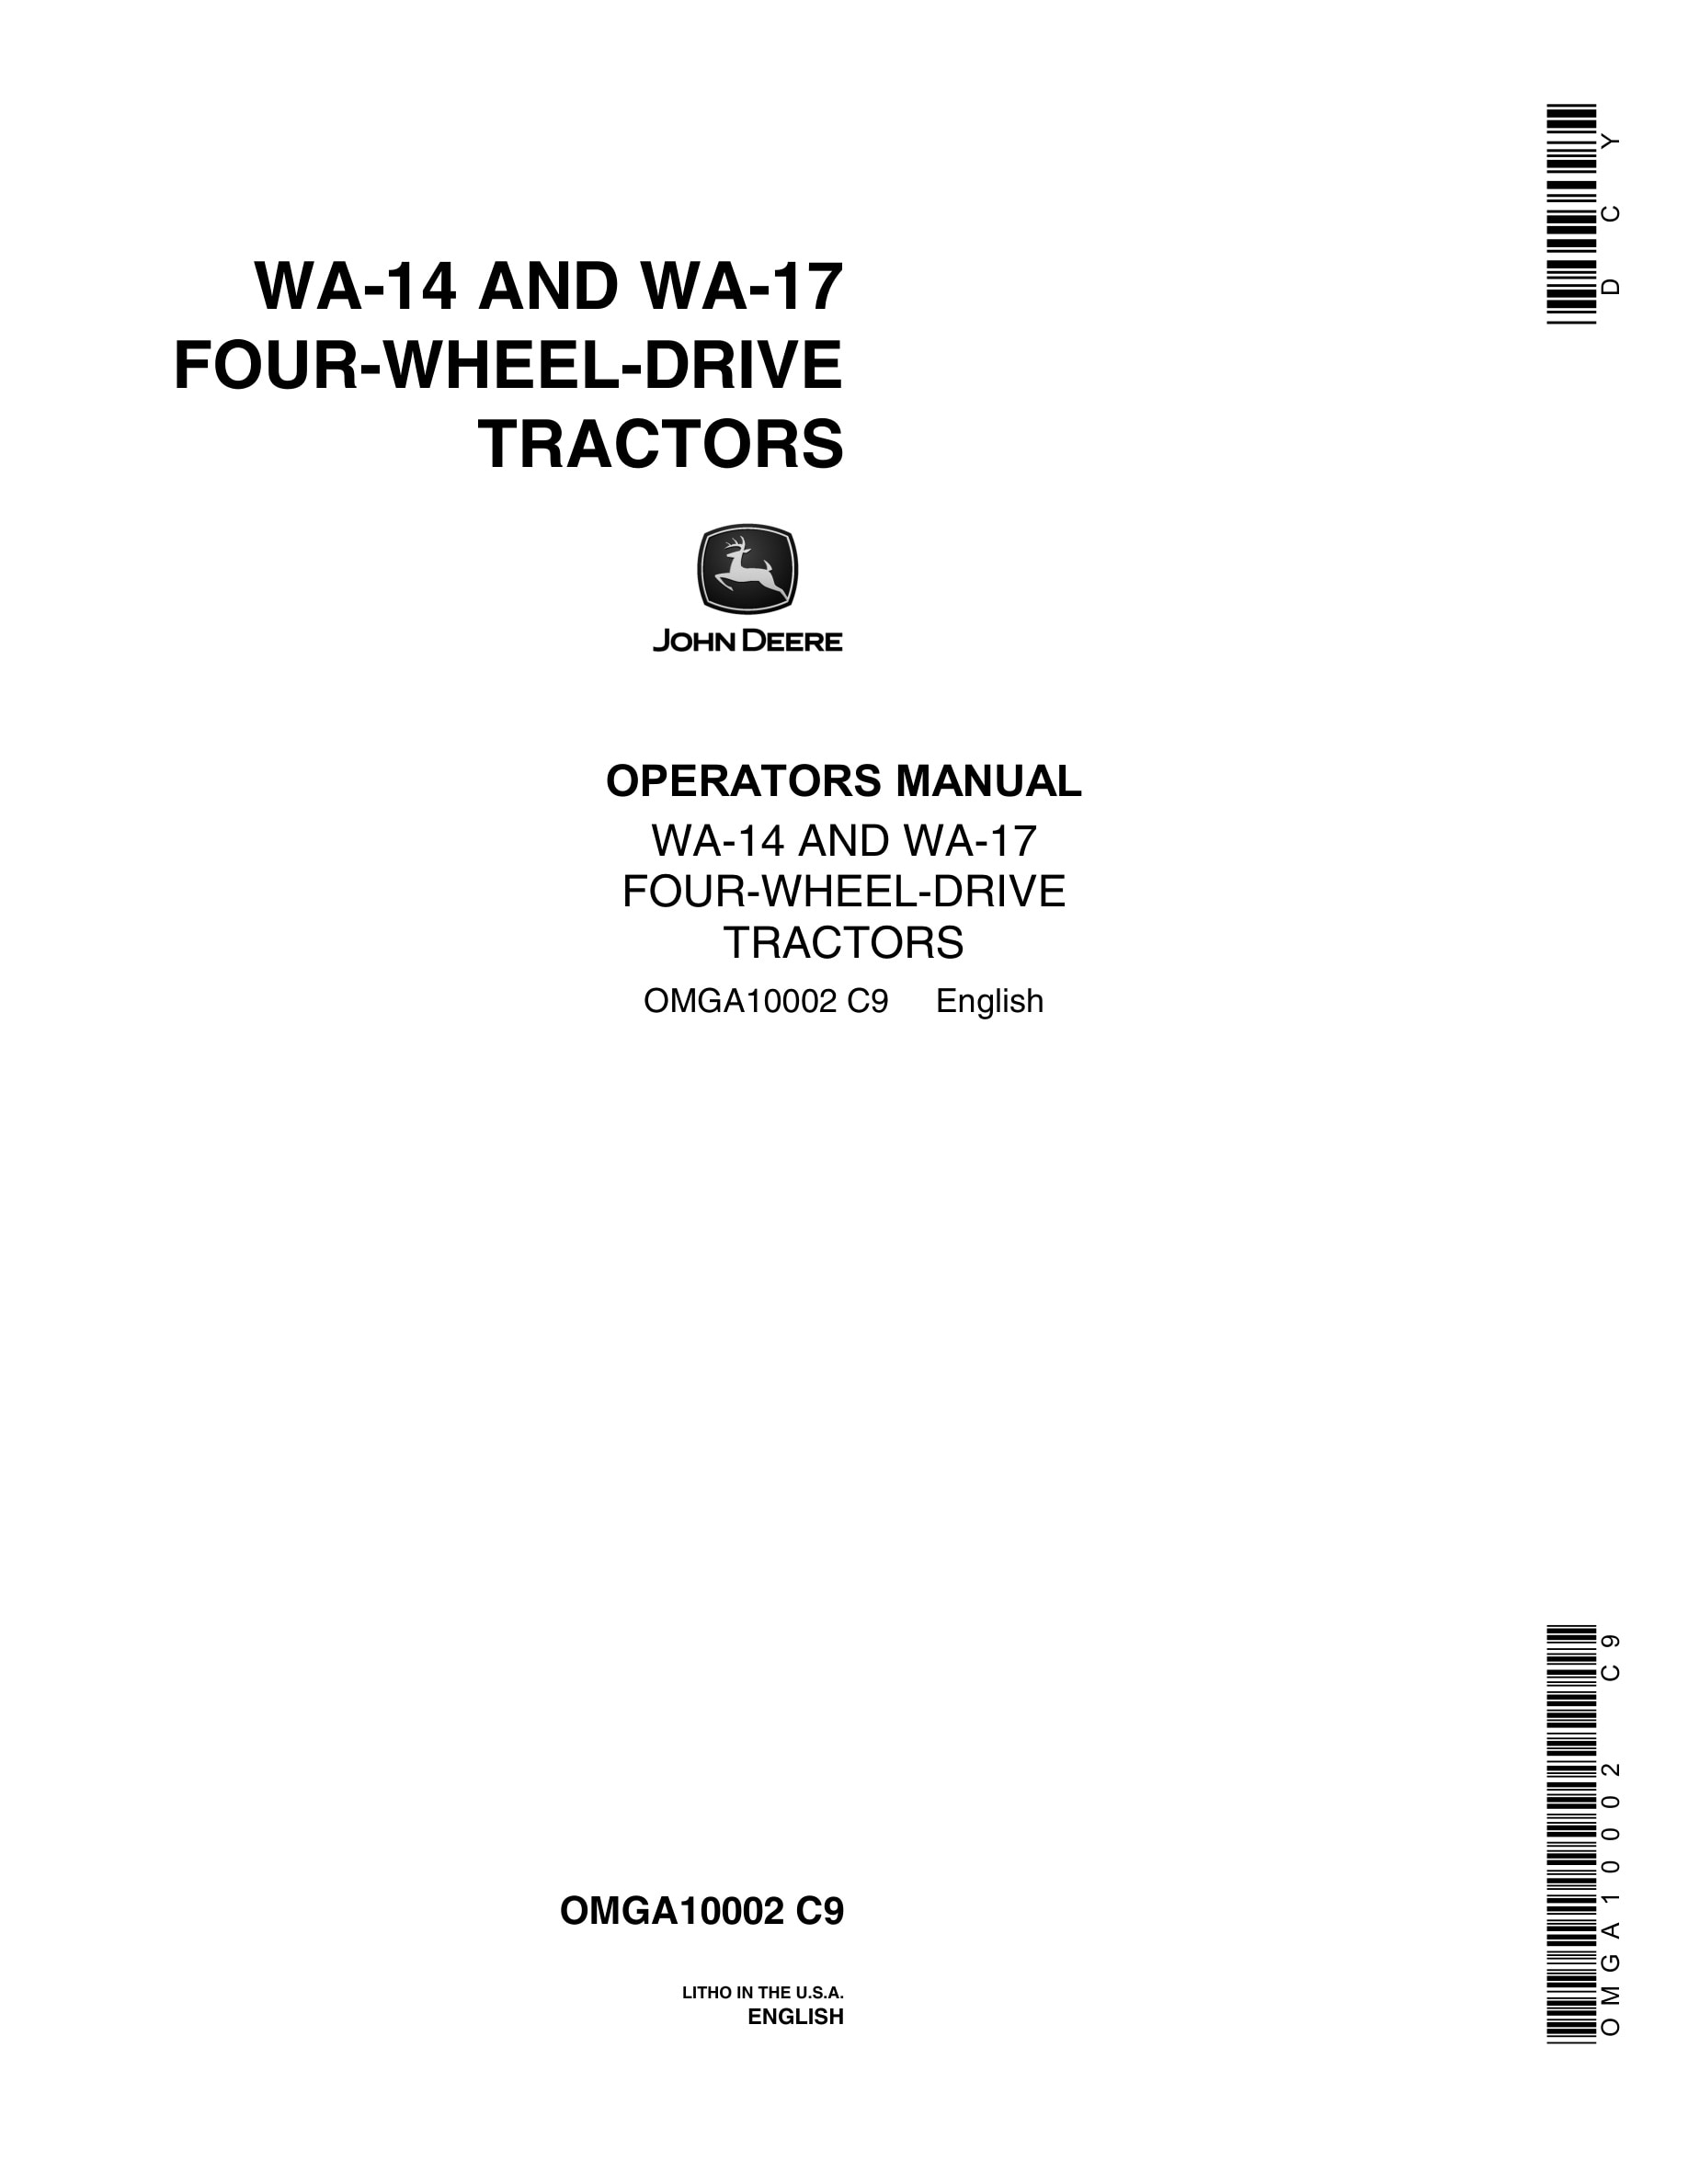 John Deere WA-14 AND WA-17 Tractor Operator Manual OMGA10002-1